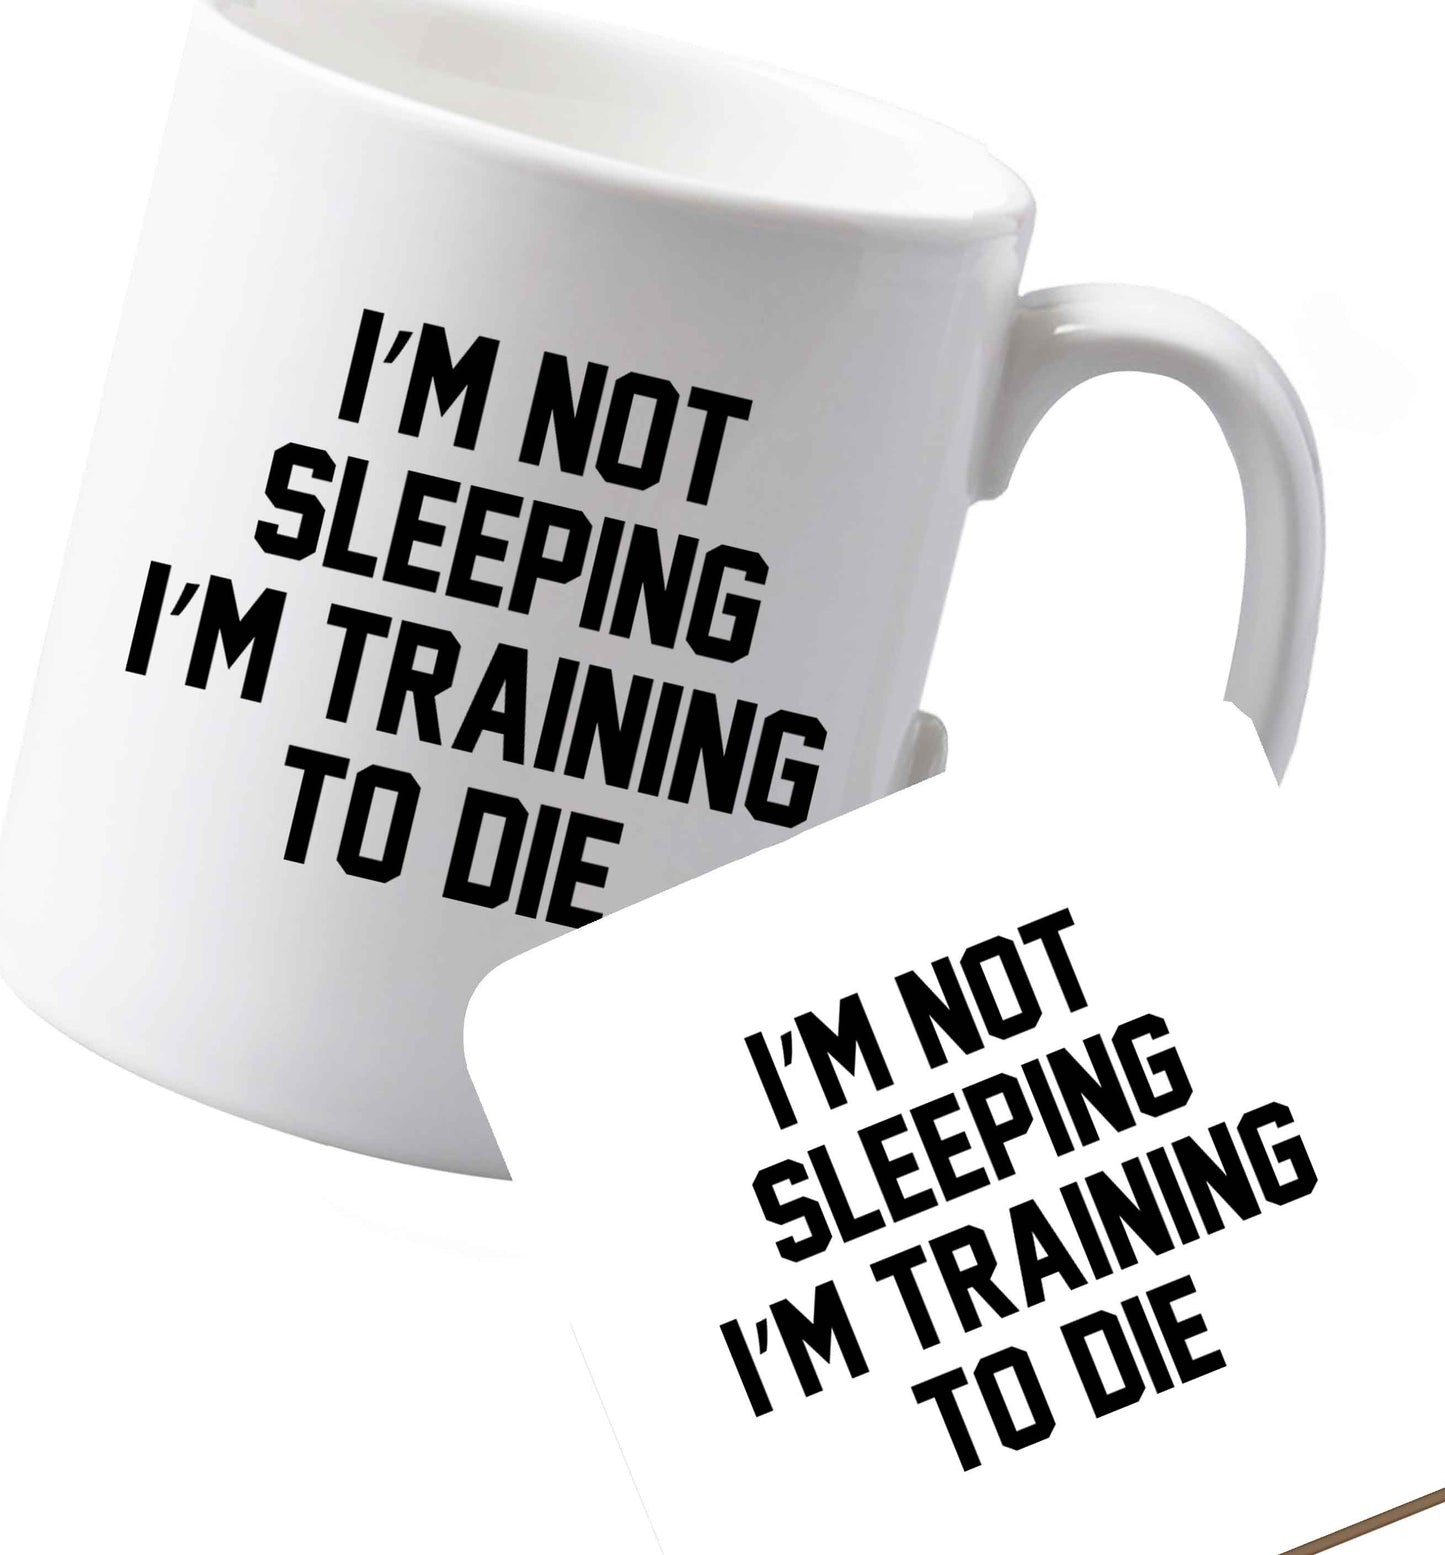 10 oz Ceramic mug and coaster I'm not sleeping I'm training to die both sides